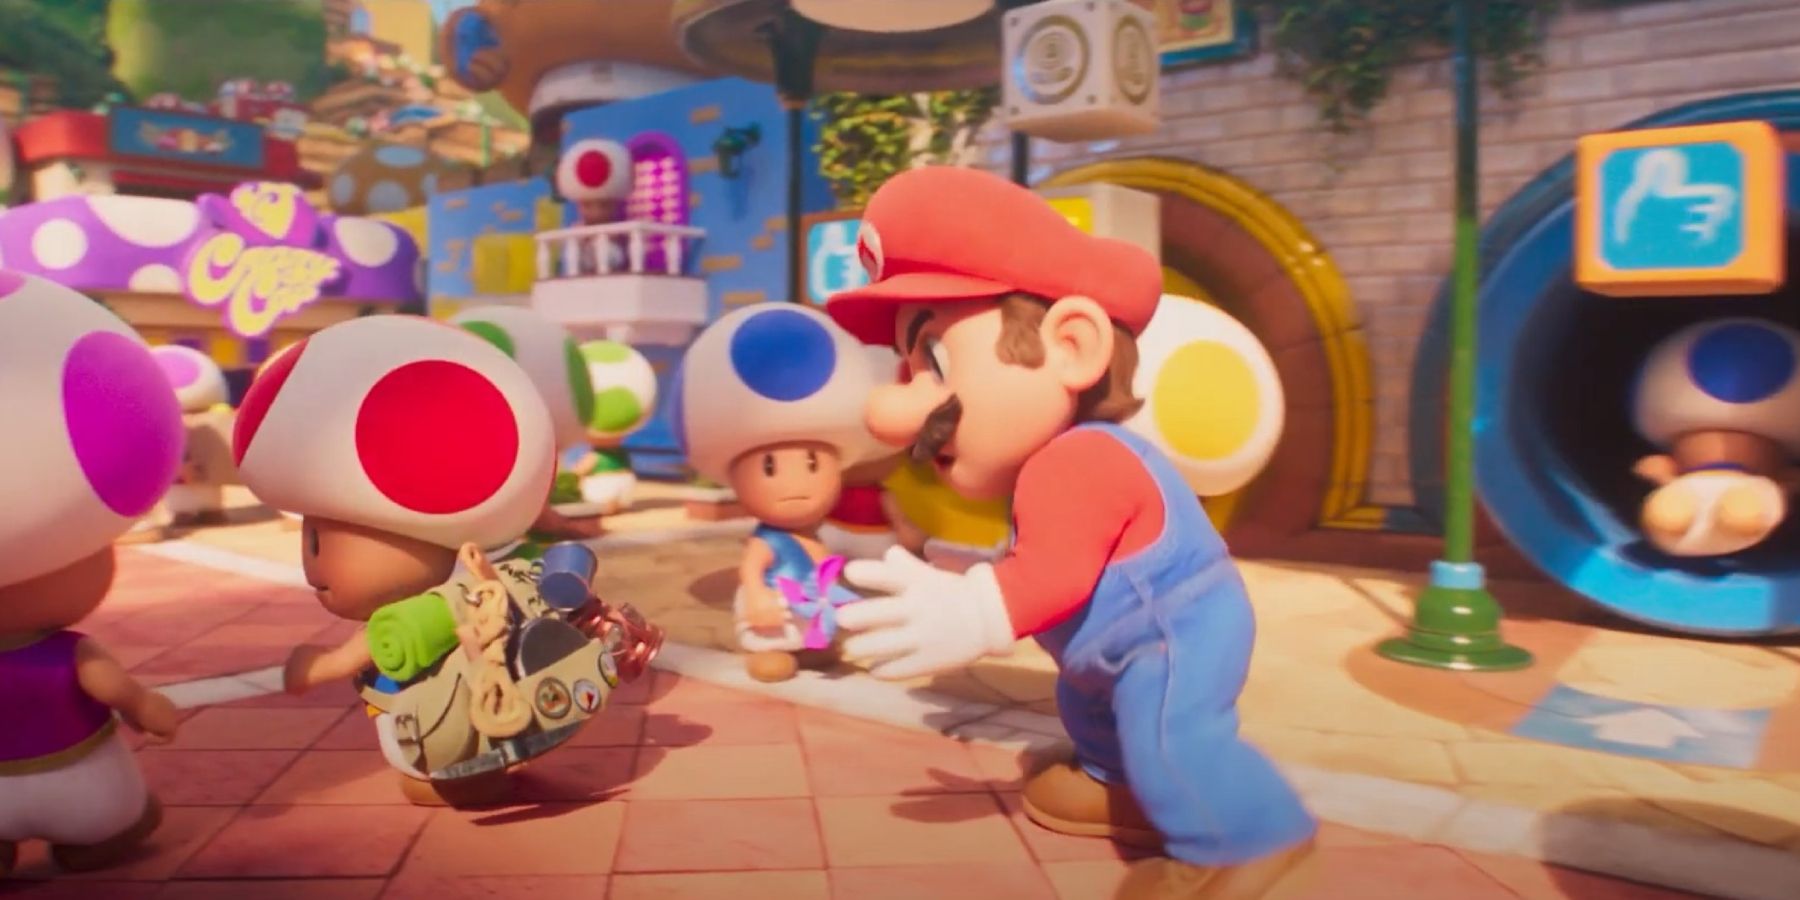 Mario and Toad in Mushroom Kingdom in Super Mario Bros. movie